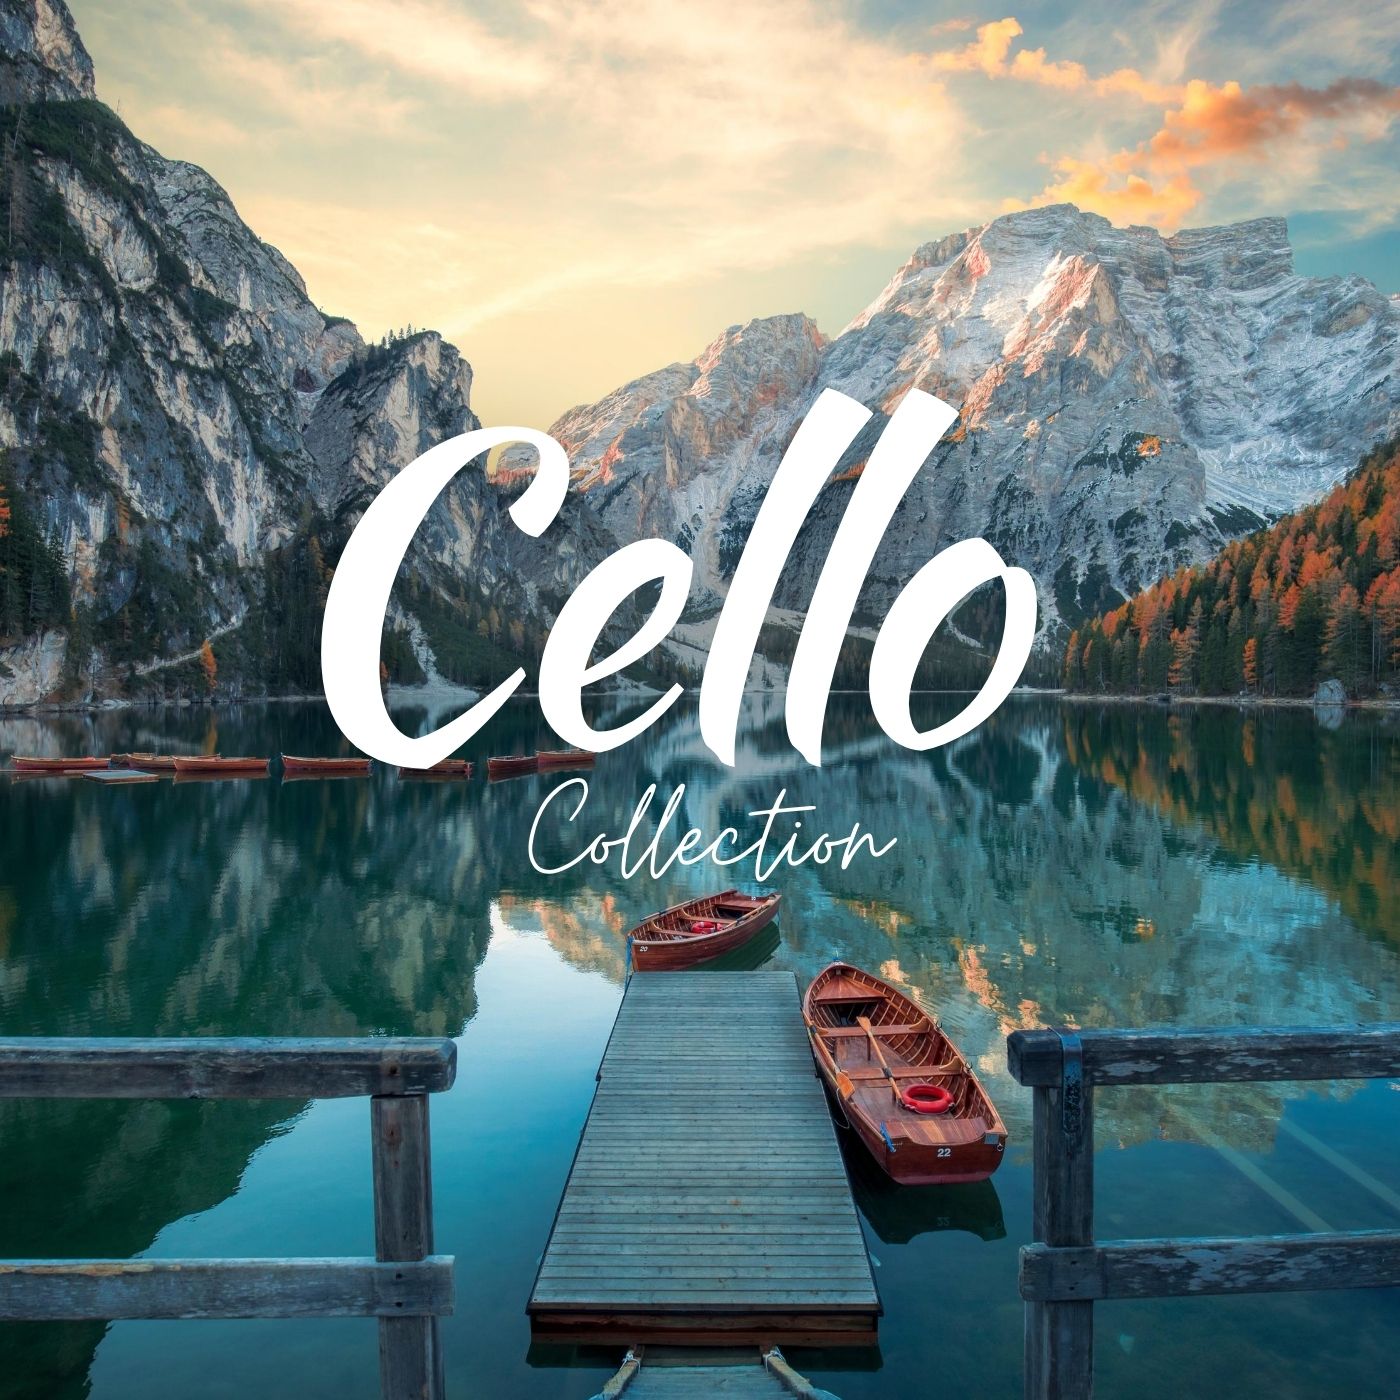 Cello Collection